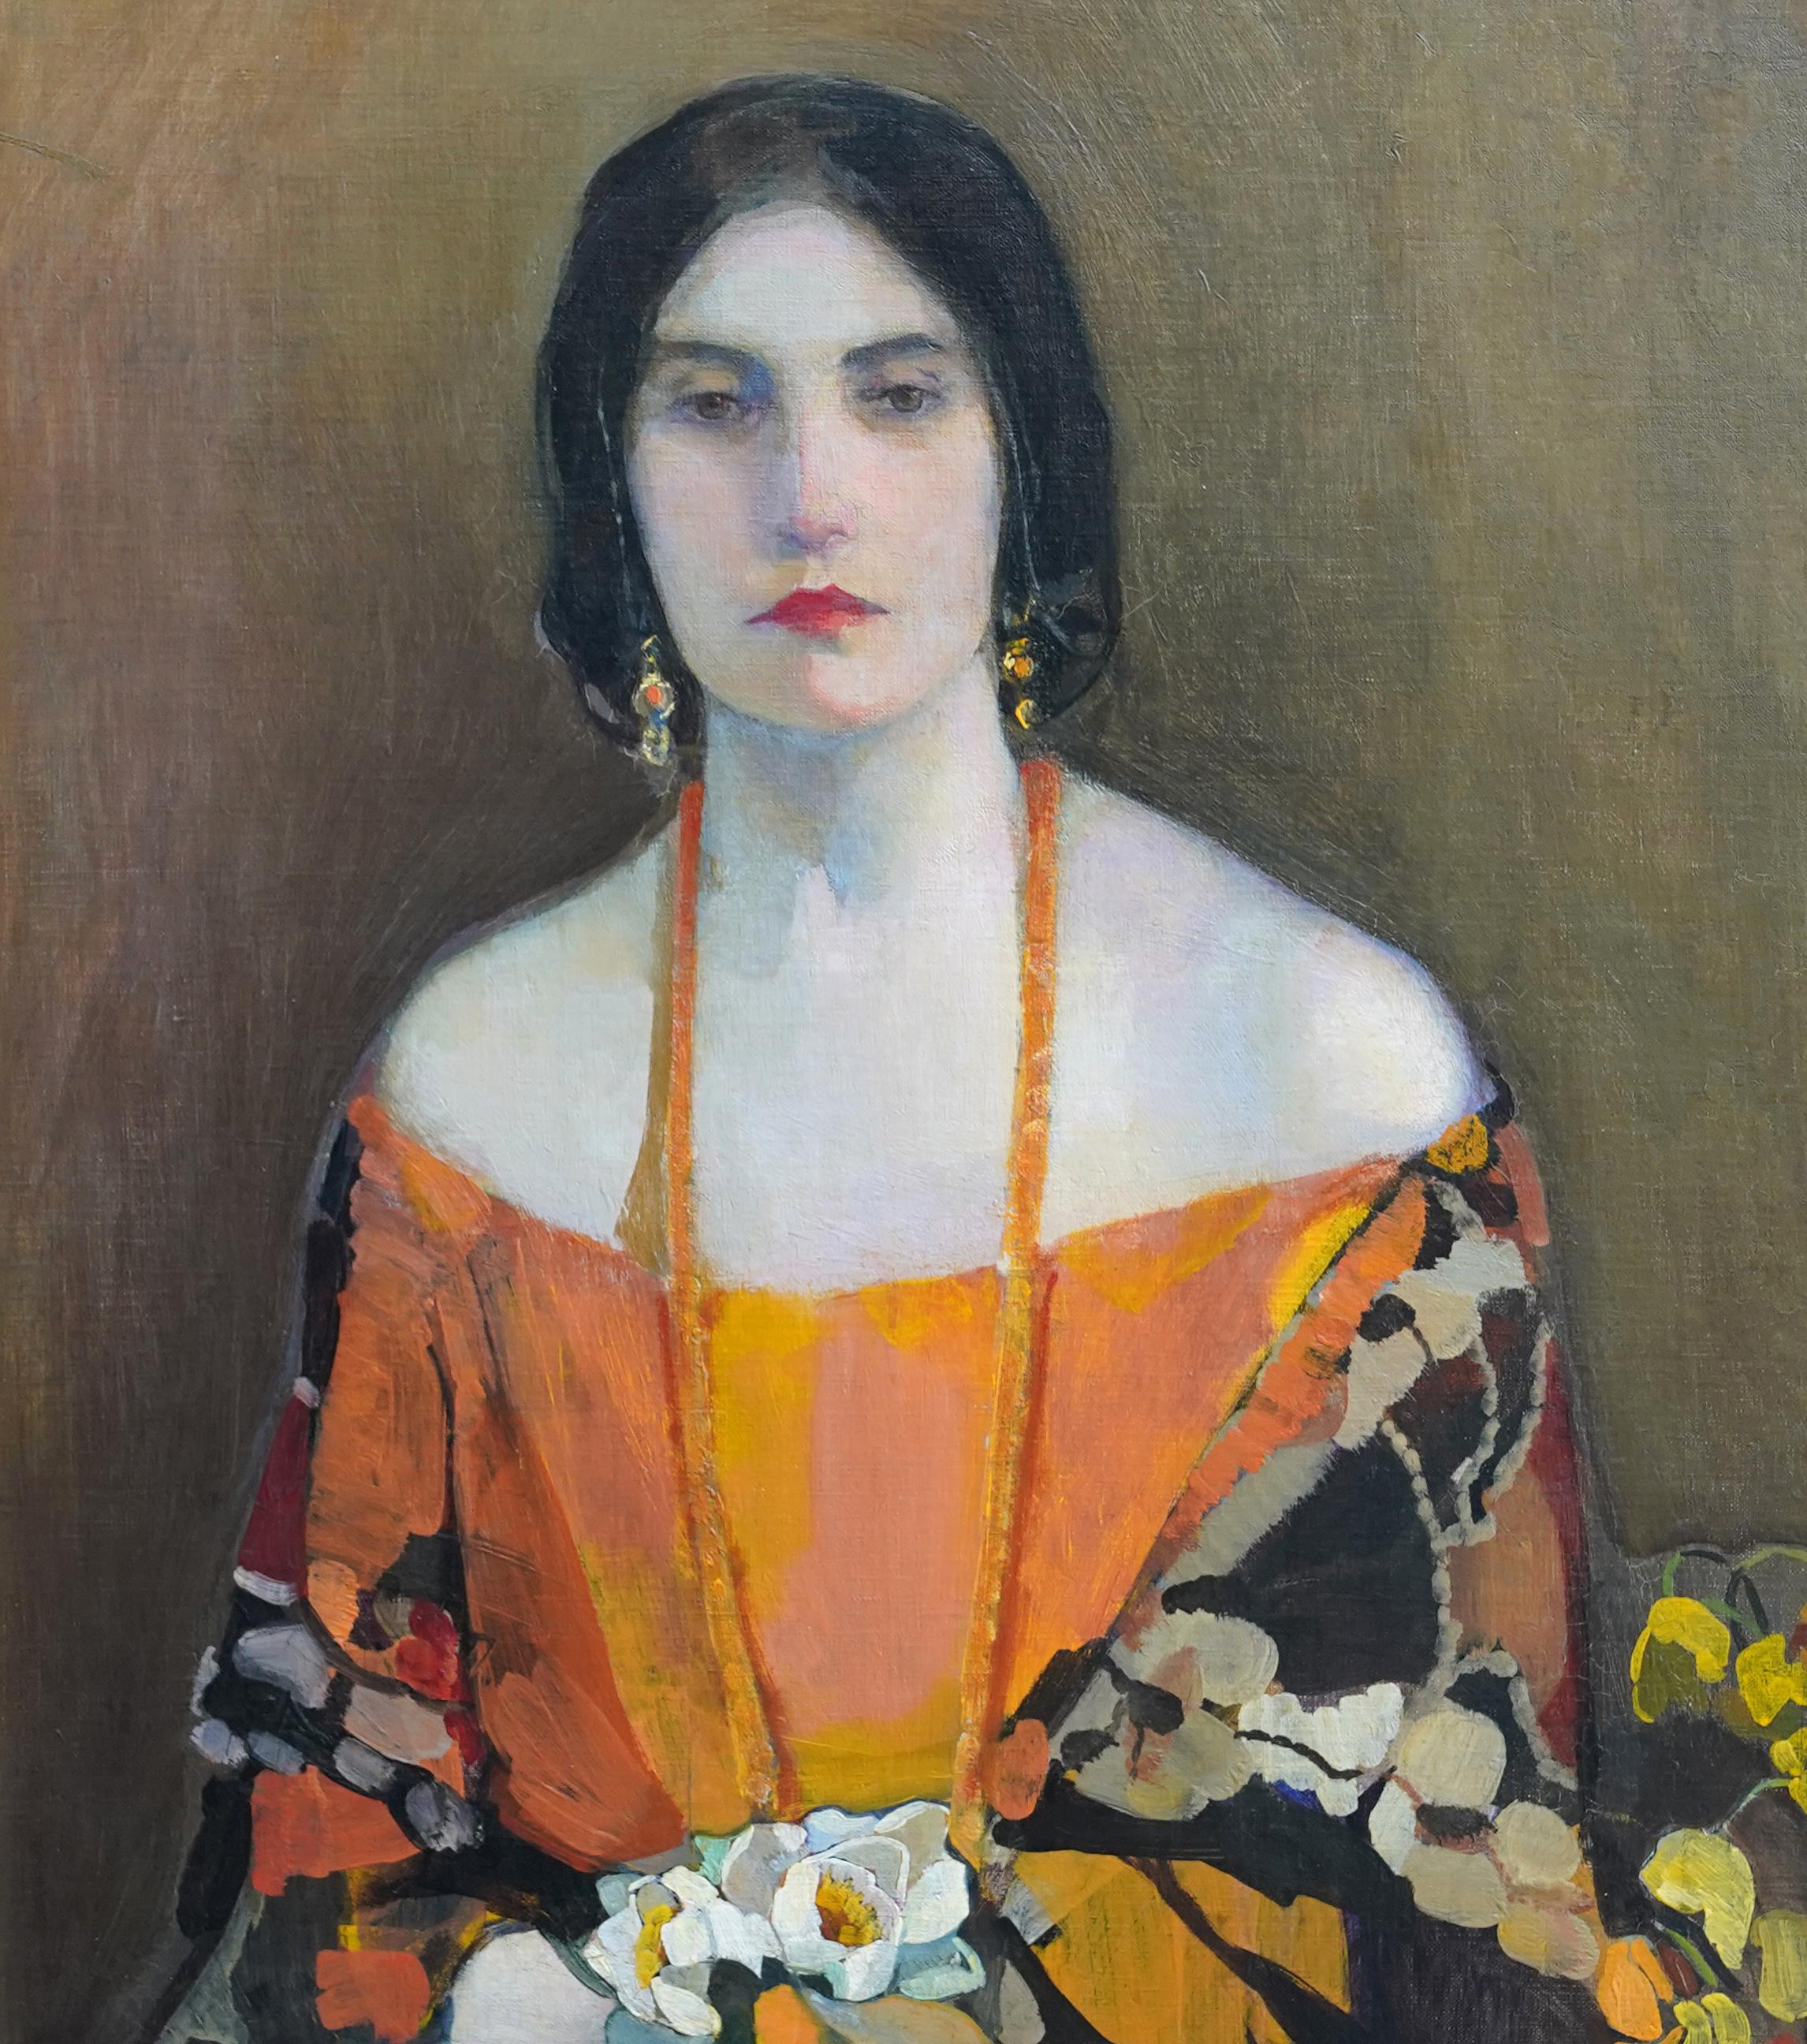 Ce magnifique portrait à l'huile écossais des années 1920, qui a fait l'objet de nombreuses expositions, est l'œuvre de Norah Nielson Gray, artiste renommée de Glasgow Girl. Peint vers 1923, le modèle du tableau était Rita Calle, mais l'artiste n'a